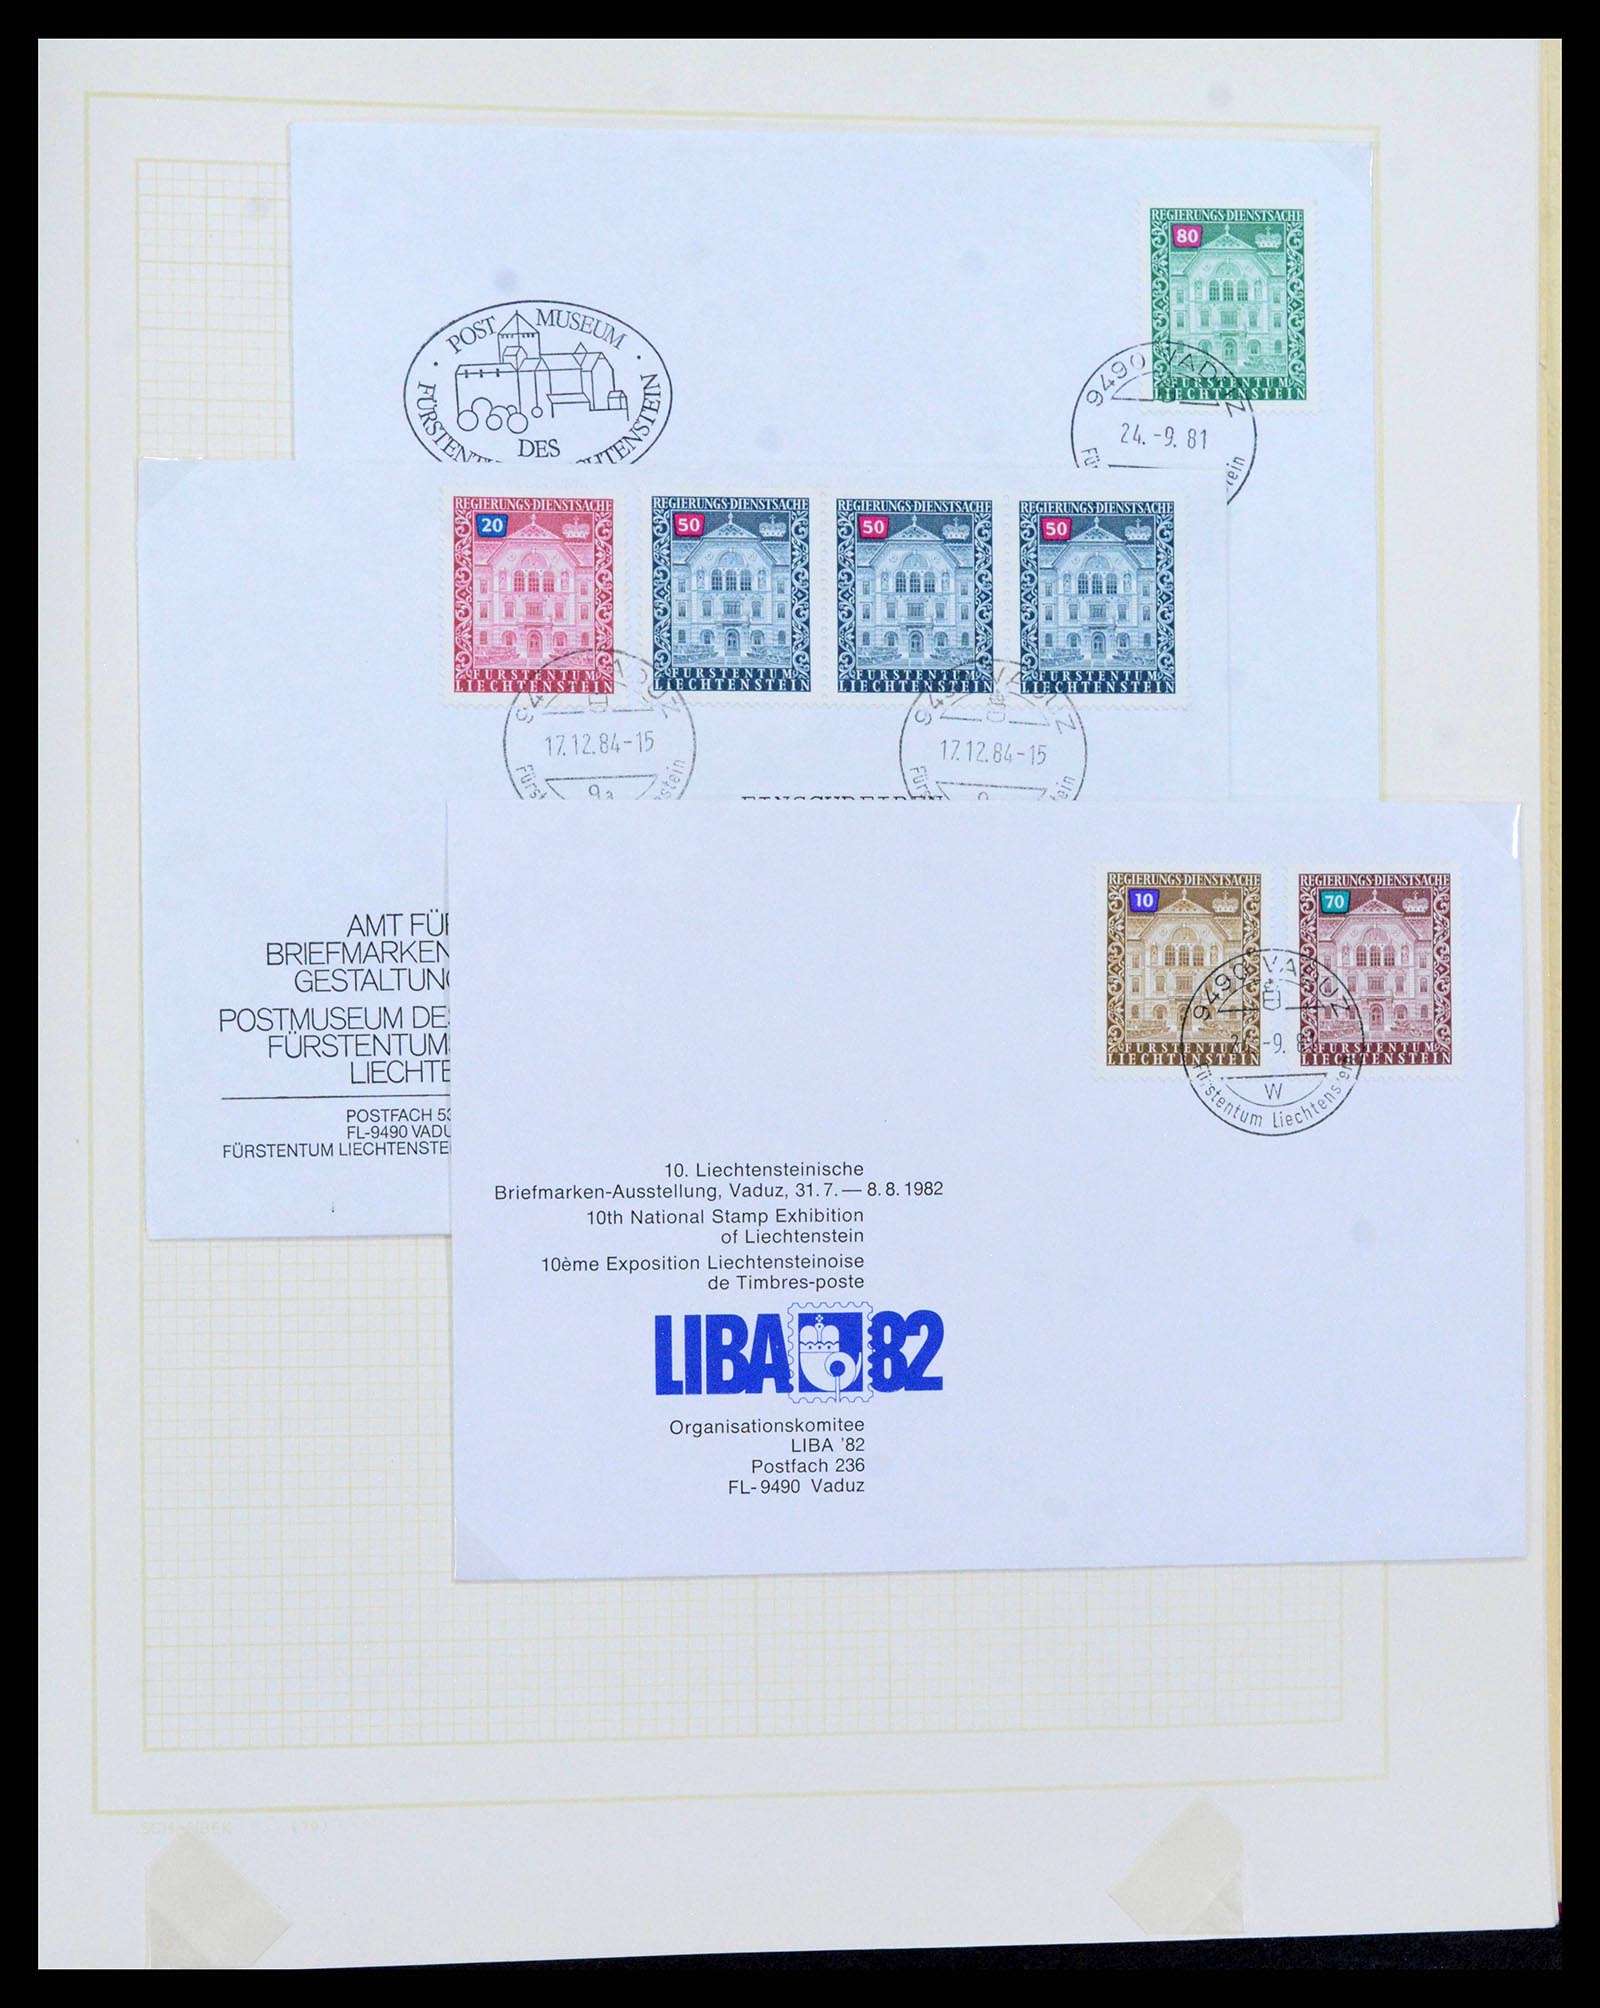 38204 0051 - Stamp collection 38204 Liechtenstein service covers 1932-1989.